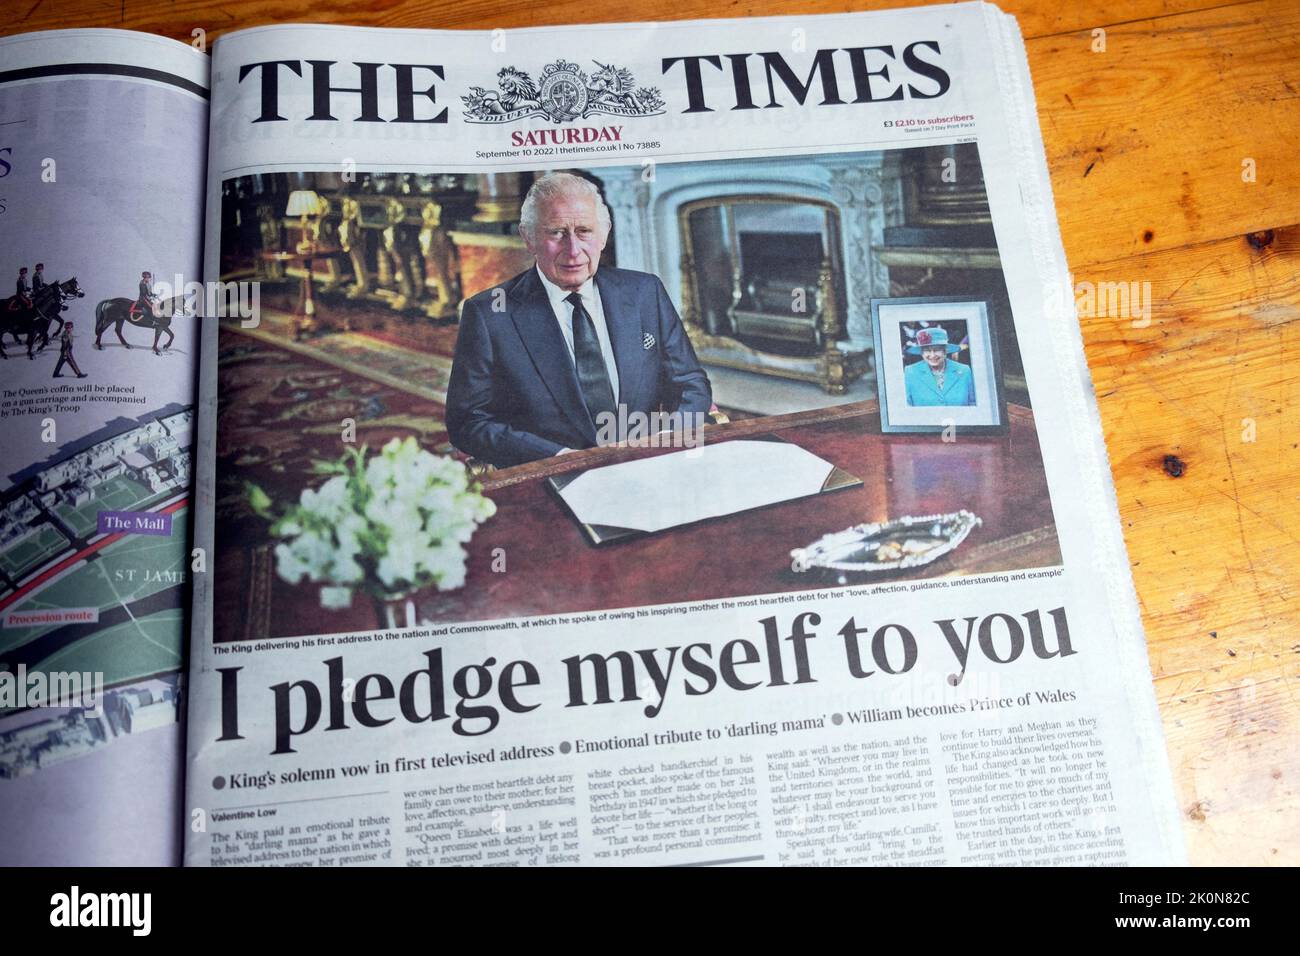 'Mi impegno a voi' voti re Charles III iThe Times giornale titolo il 10th settembre 2022 televisione indirizzo alla nazione Londra Inghilterra Regno Unito Foto Stock